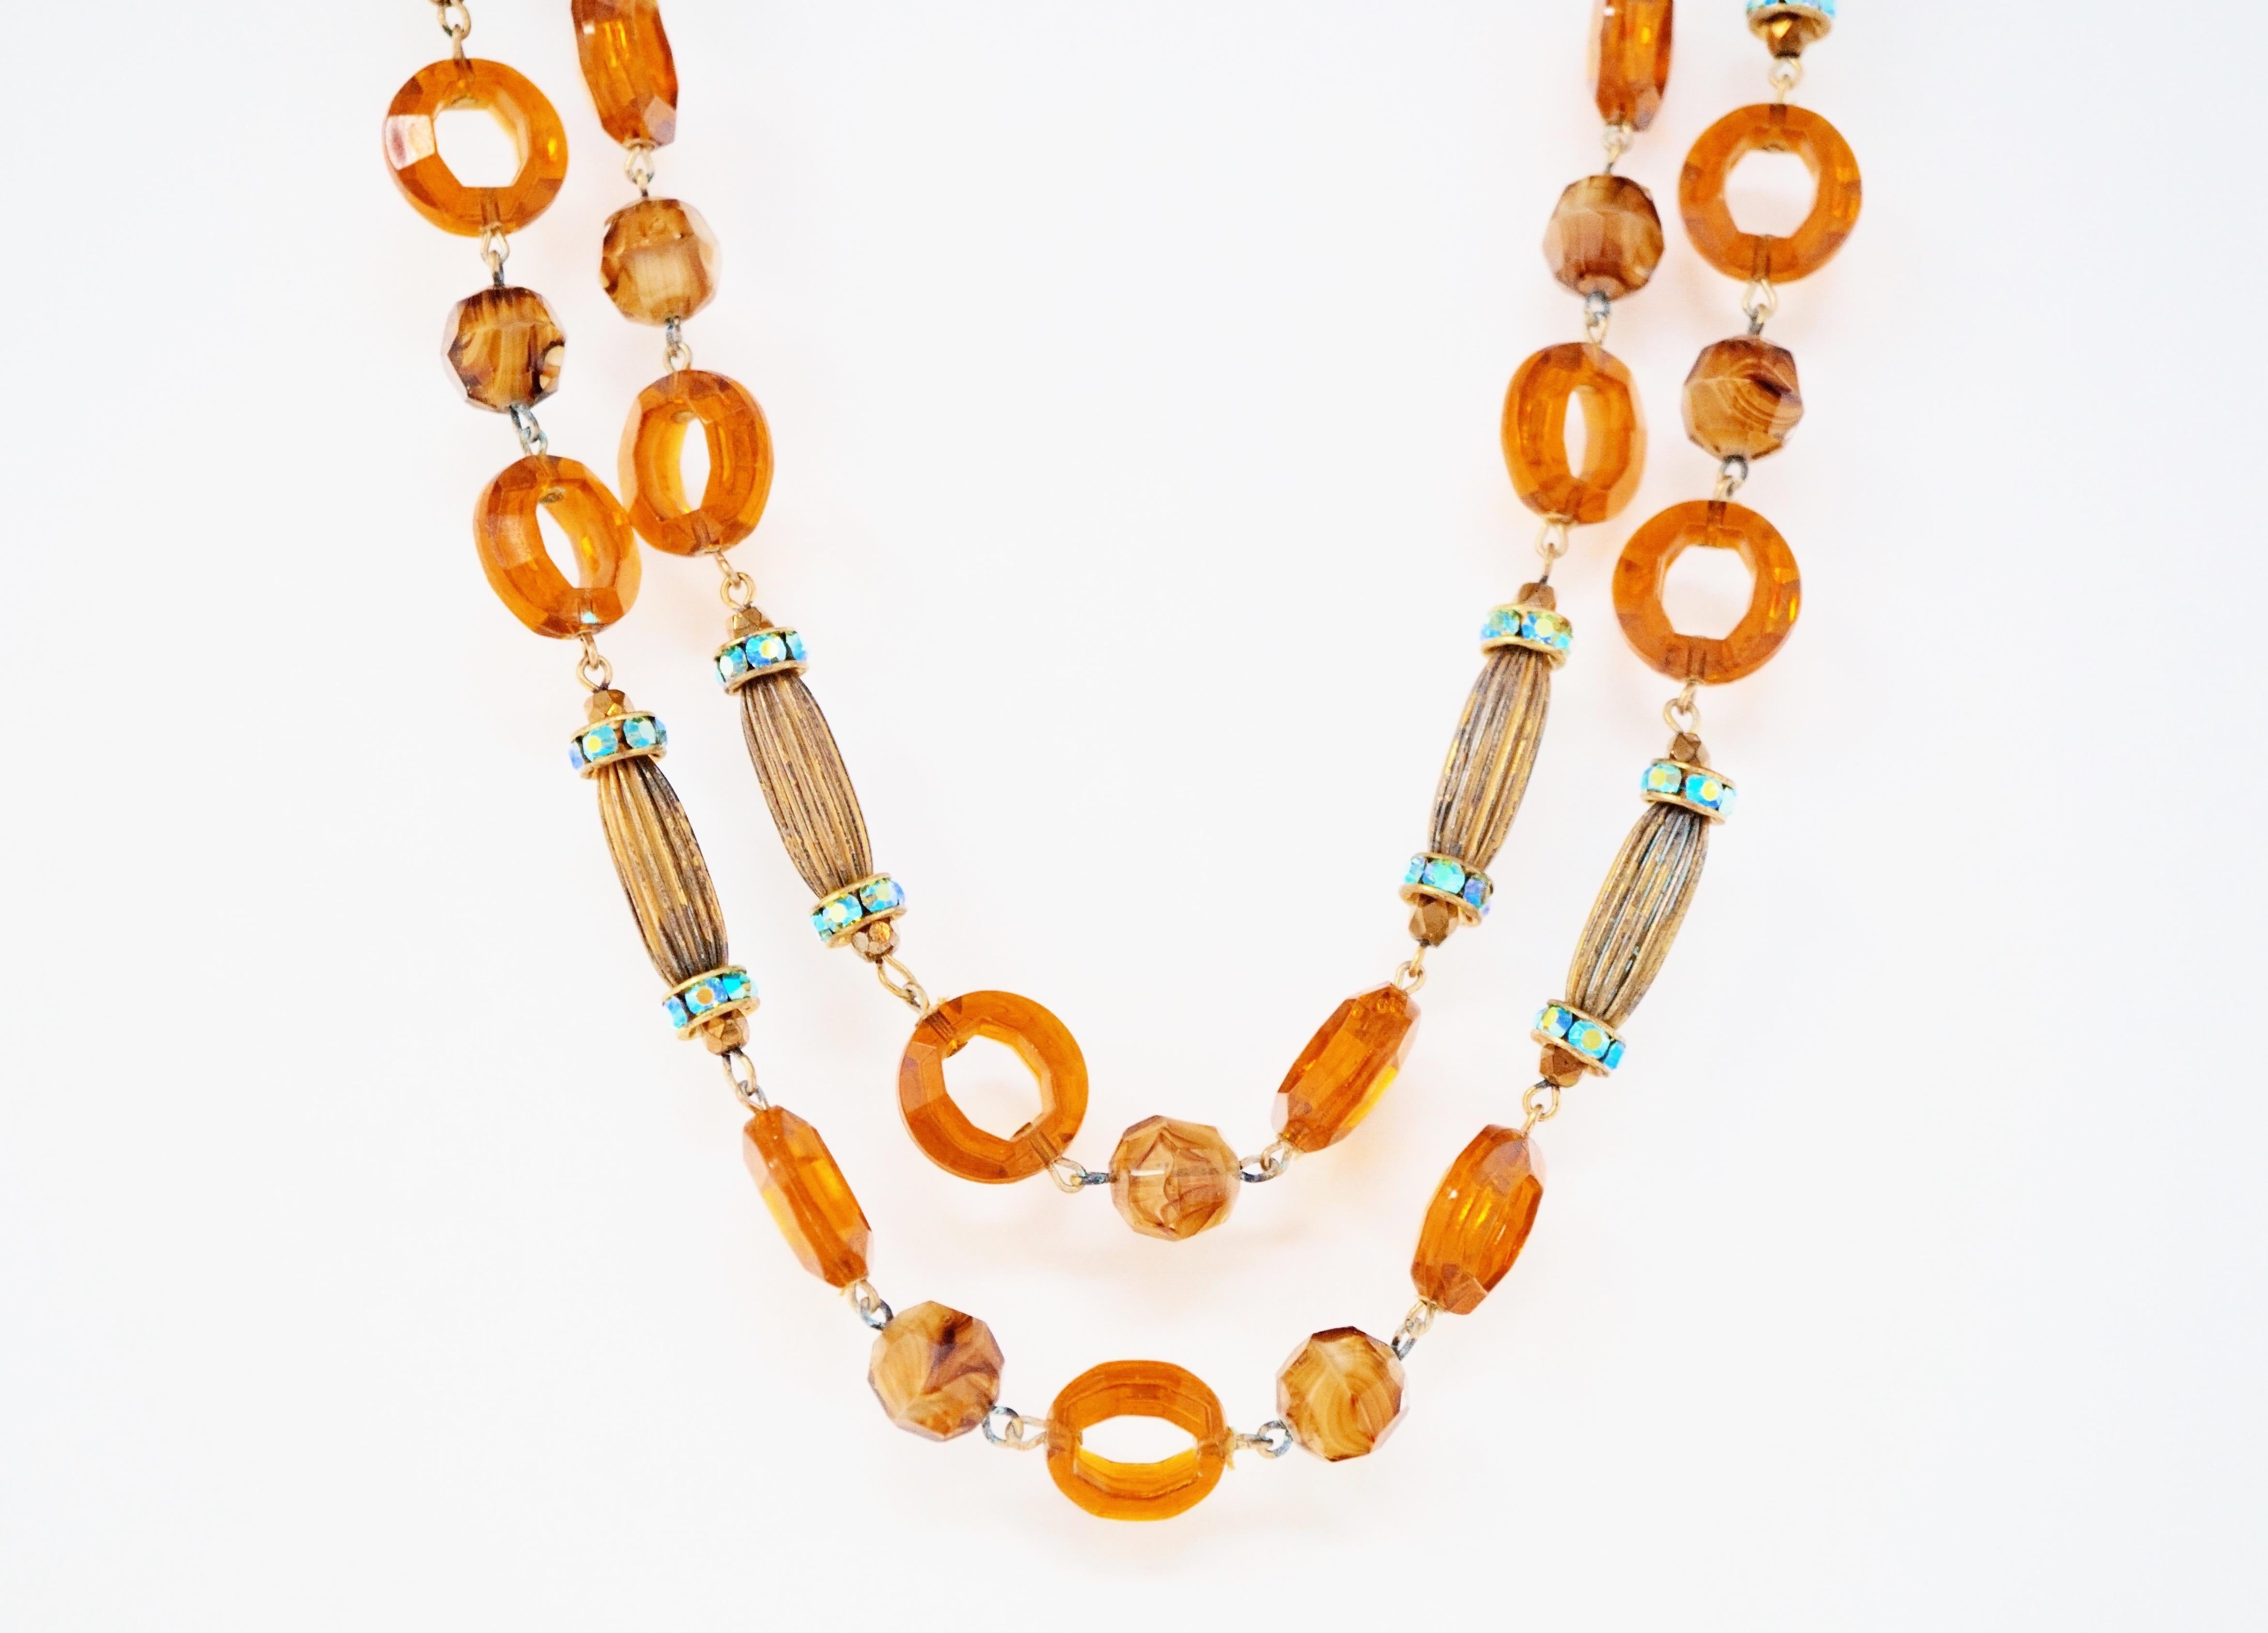 Diese wunderschöne doppelreihige Hobé-Halskette aus den 1960er Jahren zeichnet sich durch ein Muster aus orangefarbenen, durchscheinenden Ringperlen, antiken messingfarbenen Röhrenperlen und babyblauen Aurora Borealis Swarovski-Kristallrondellen